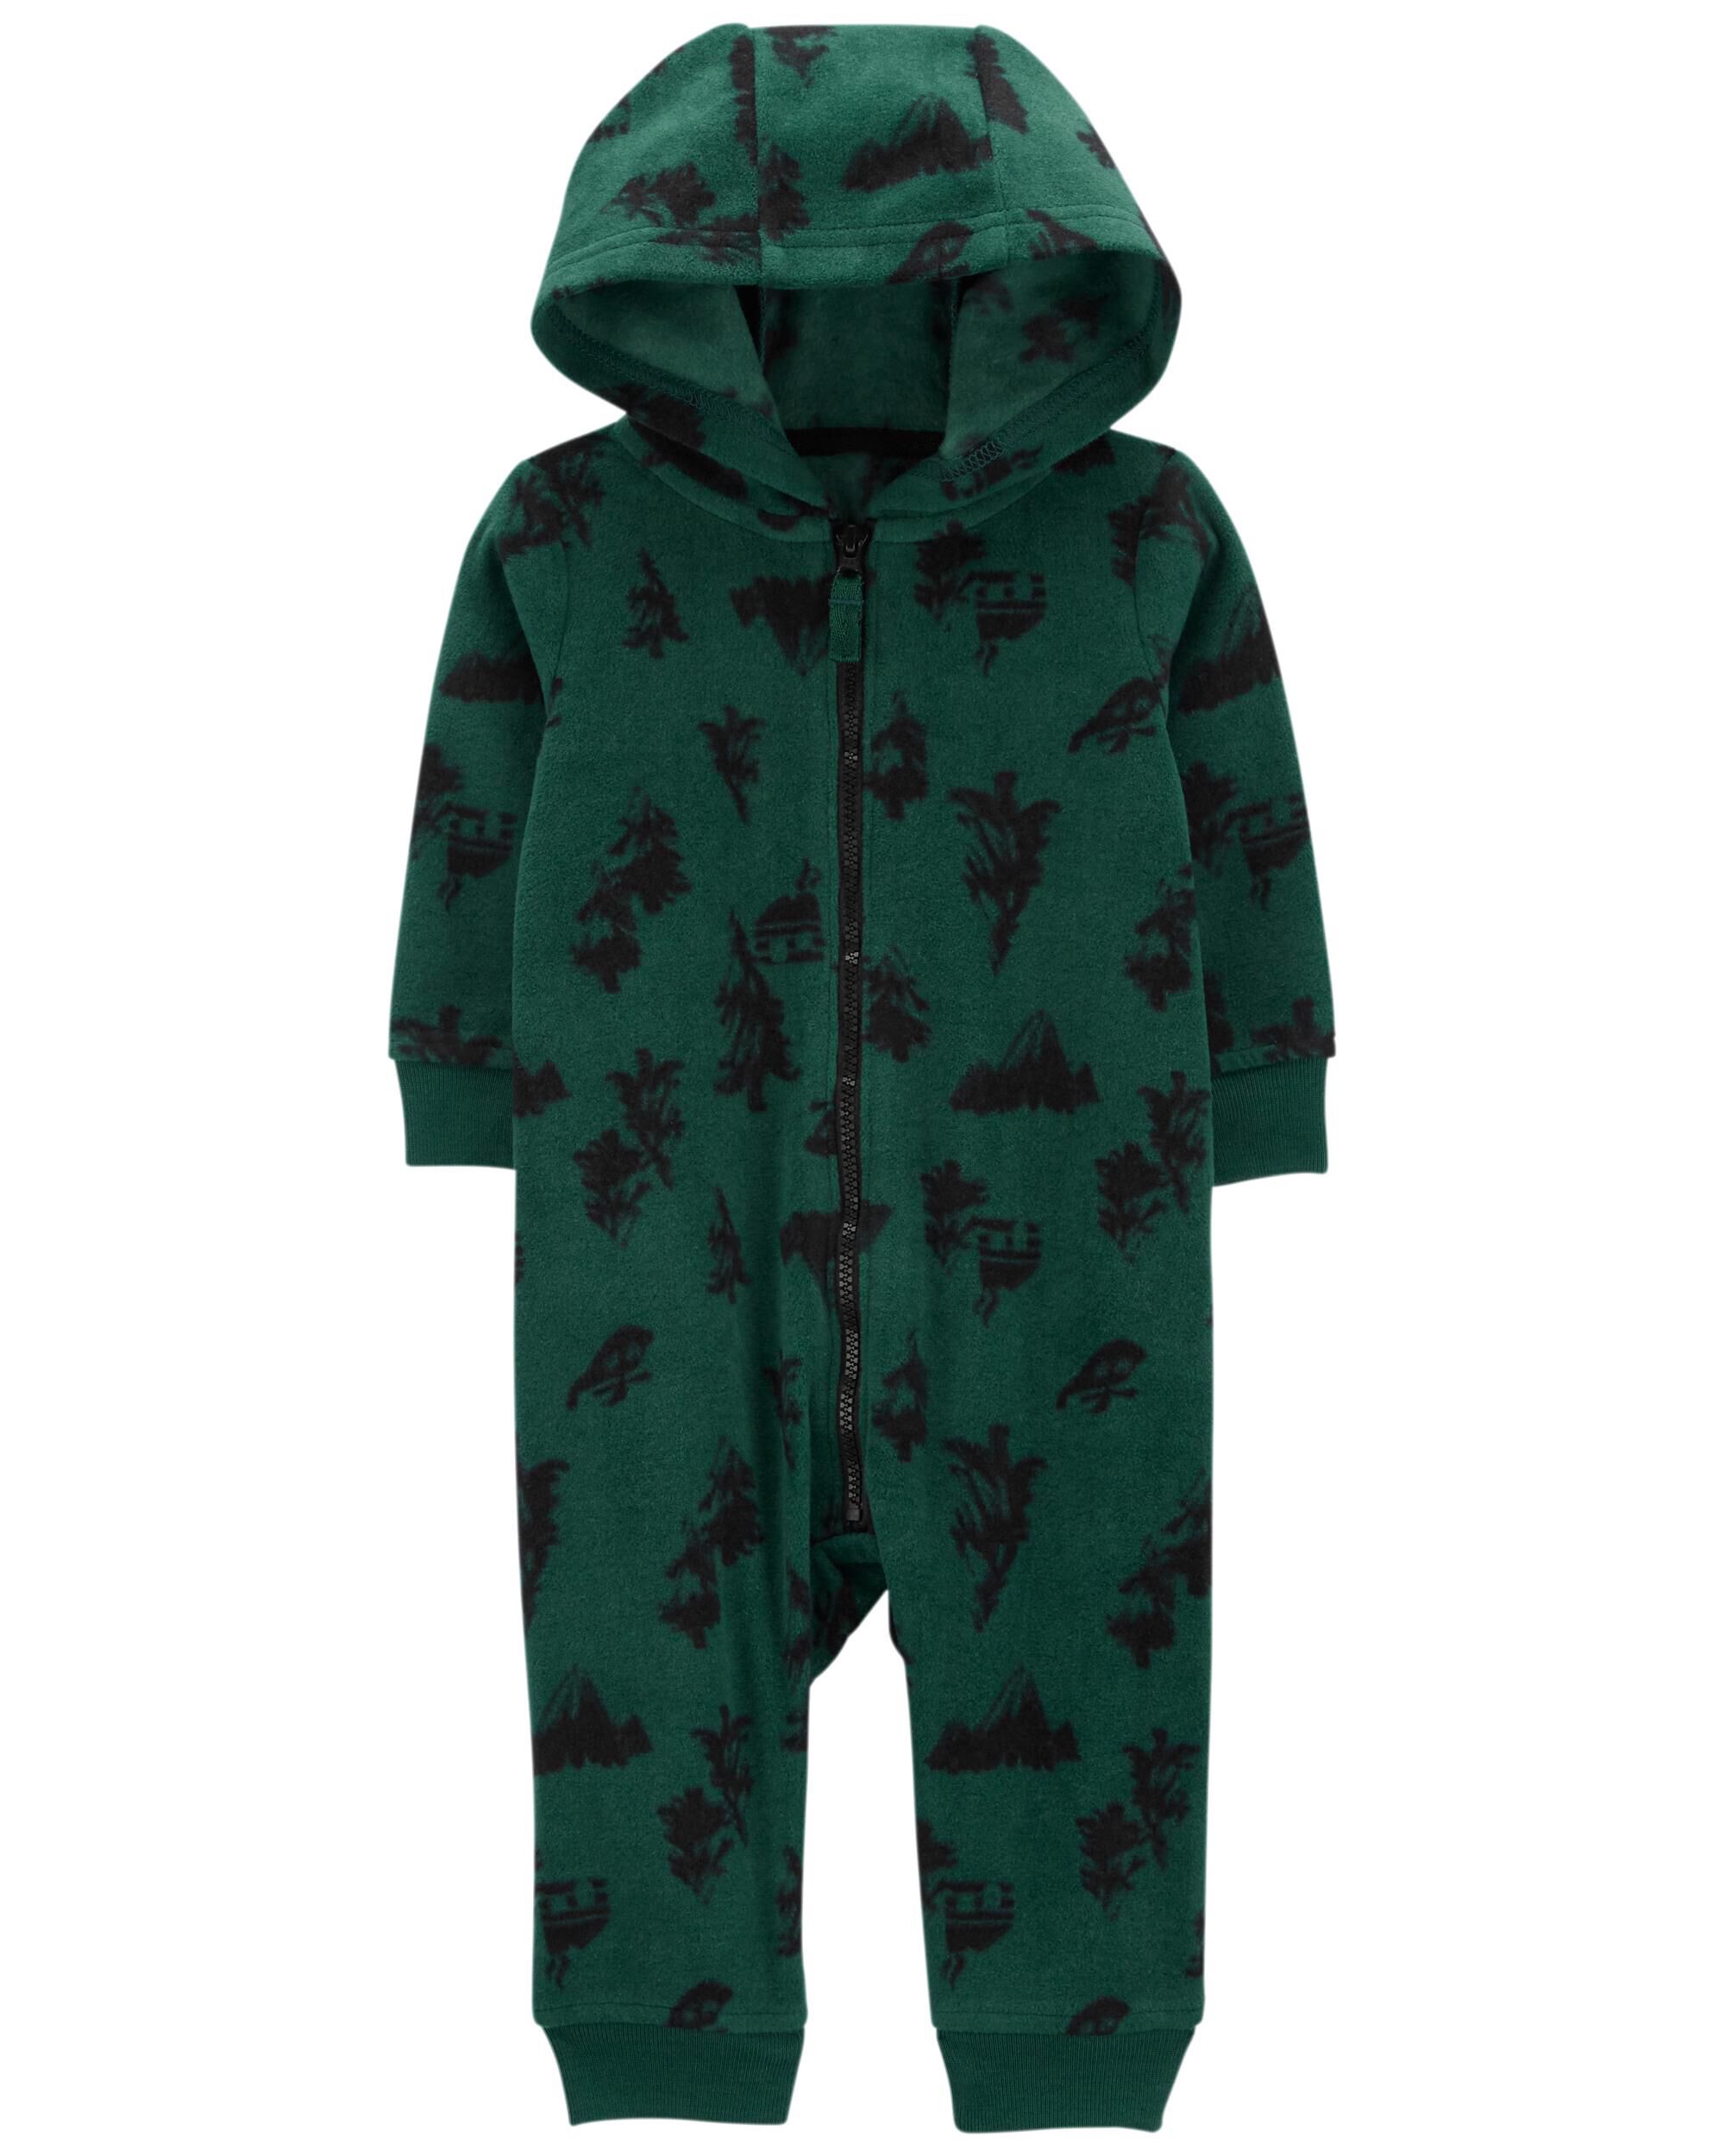 Green Baby Hooded Fleece Jumpsuit | carters.com